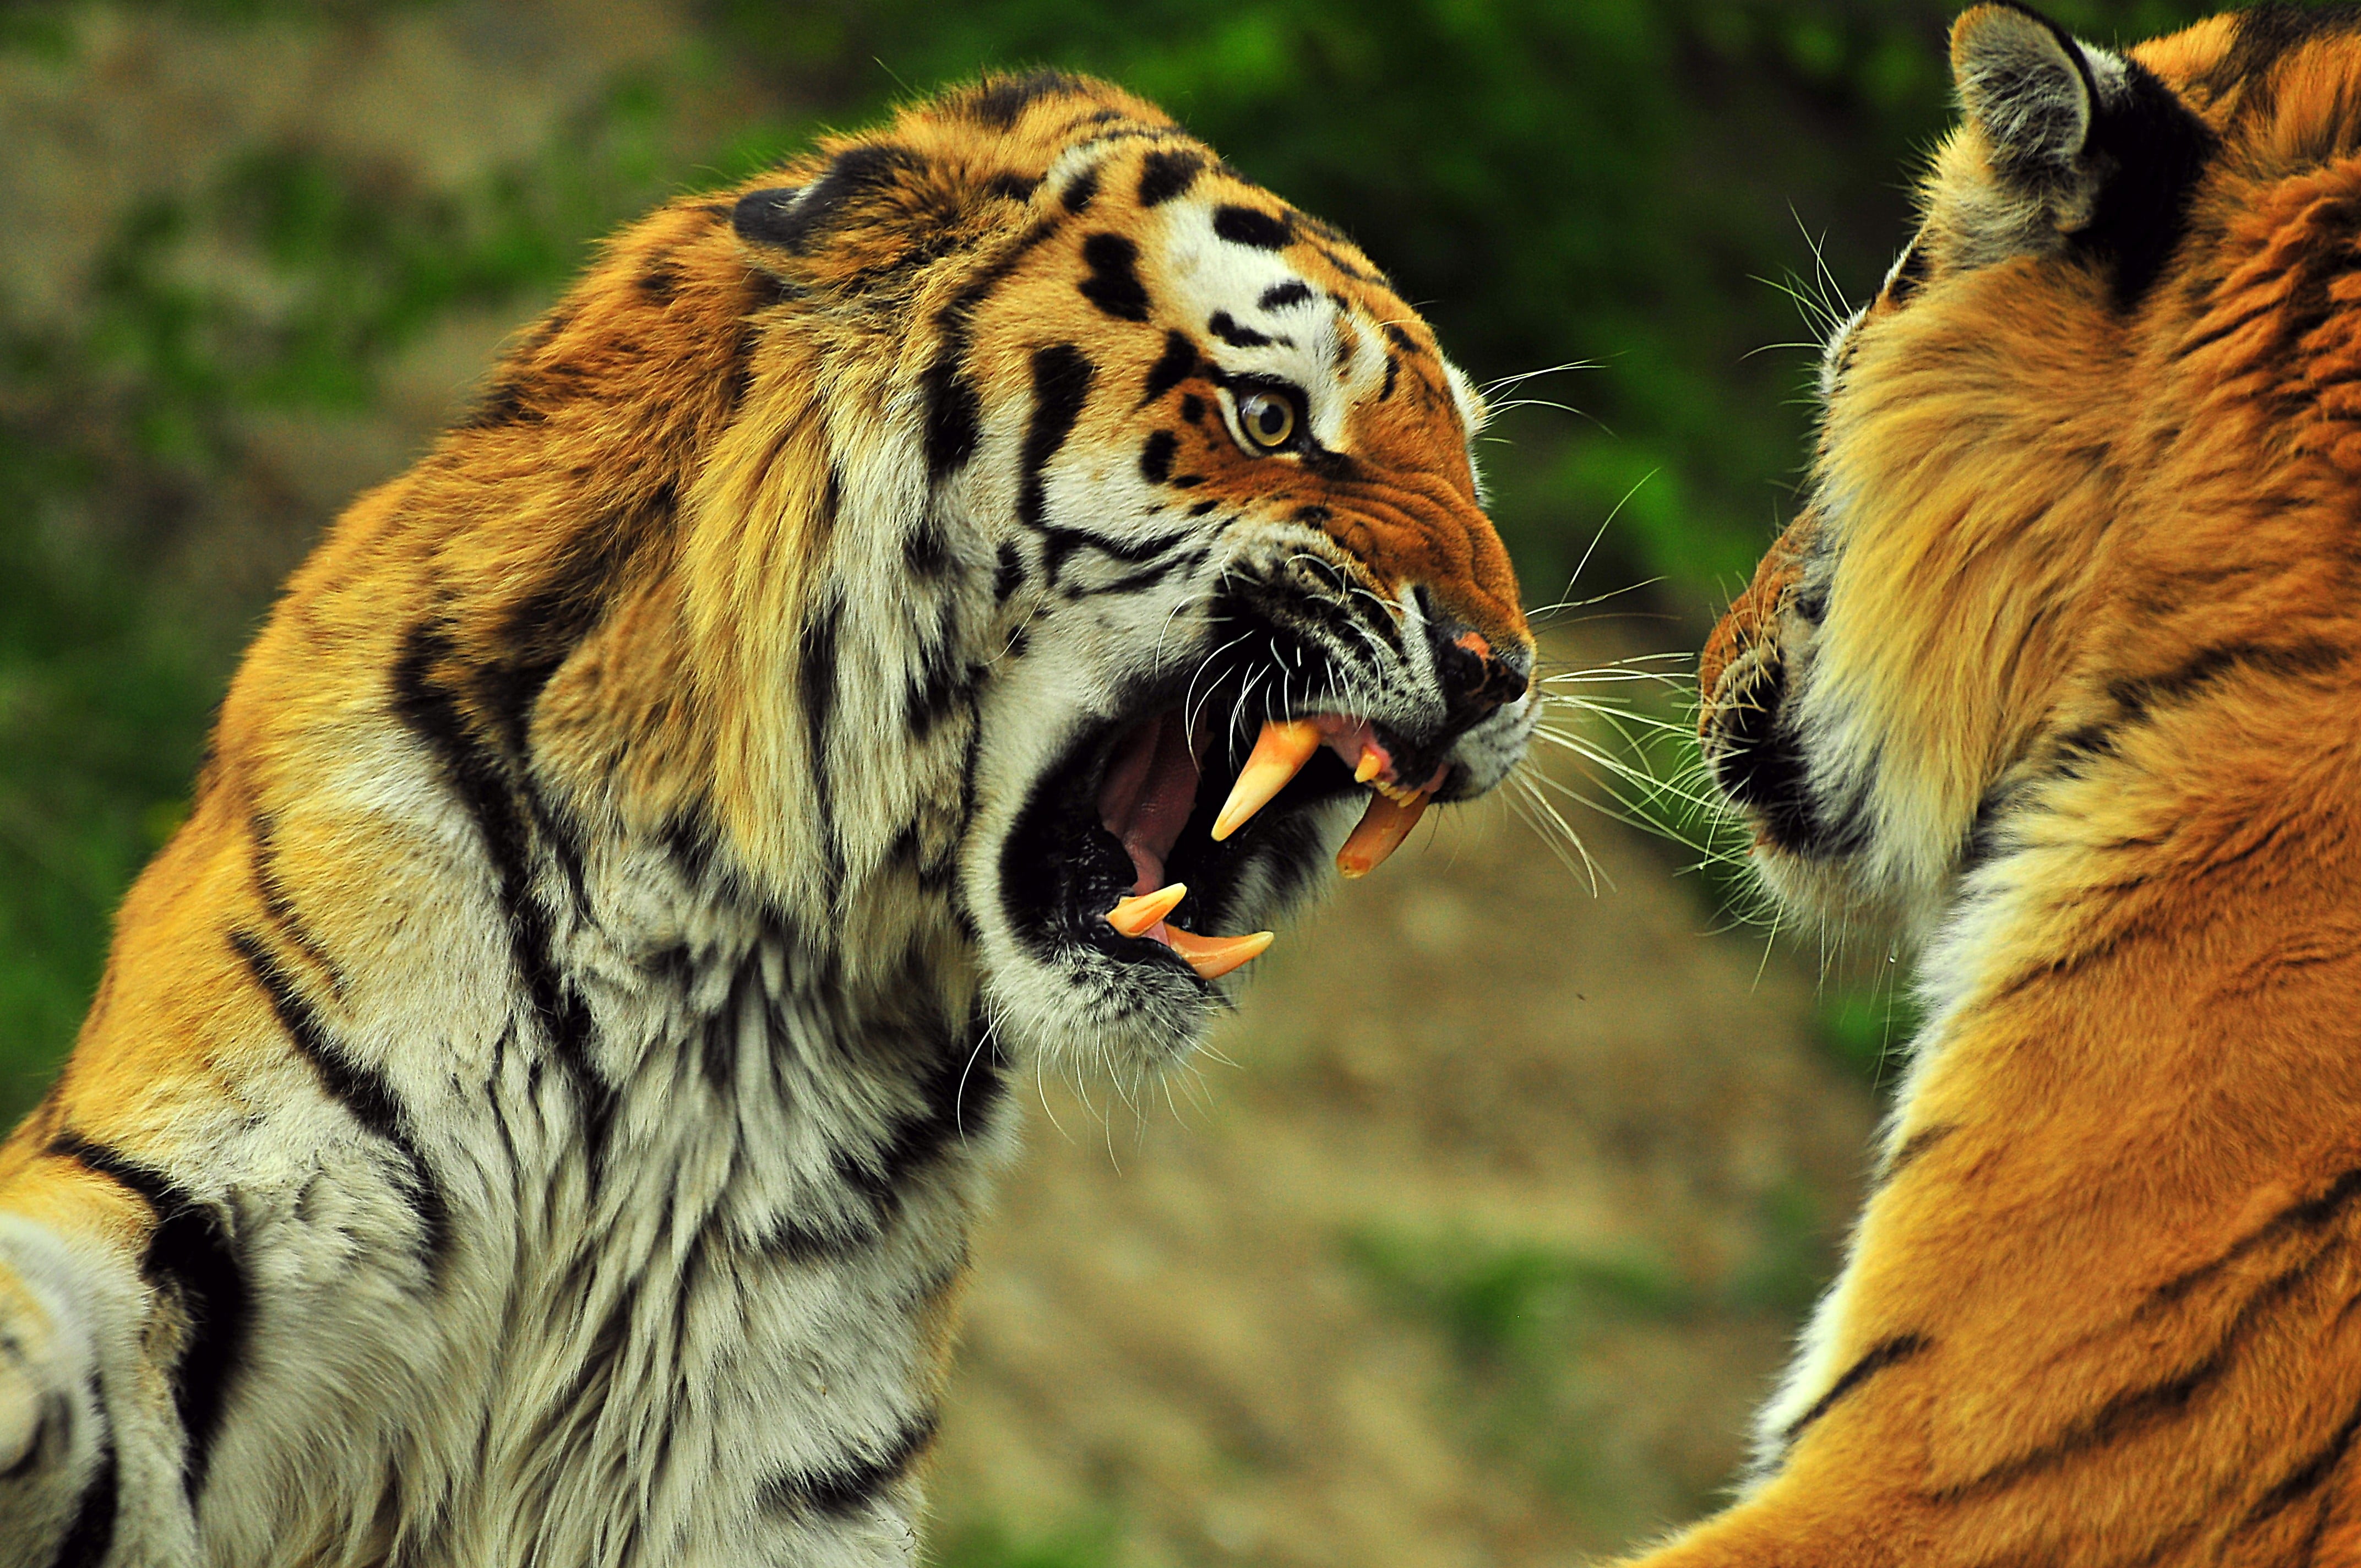 two tigers, Big Cat, D300, Tigres, Nikon, Animals, Nature, Color